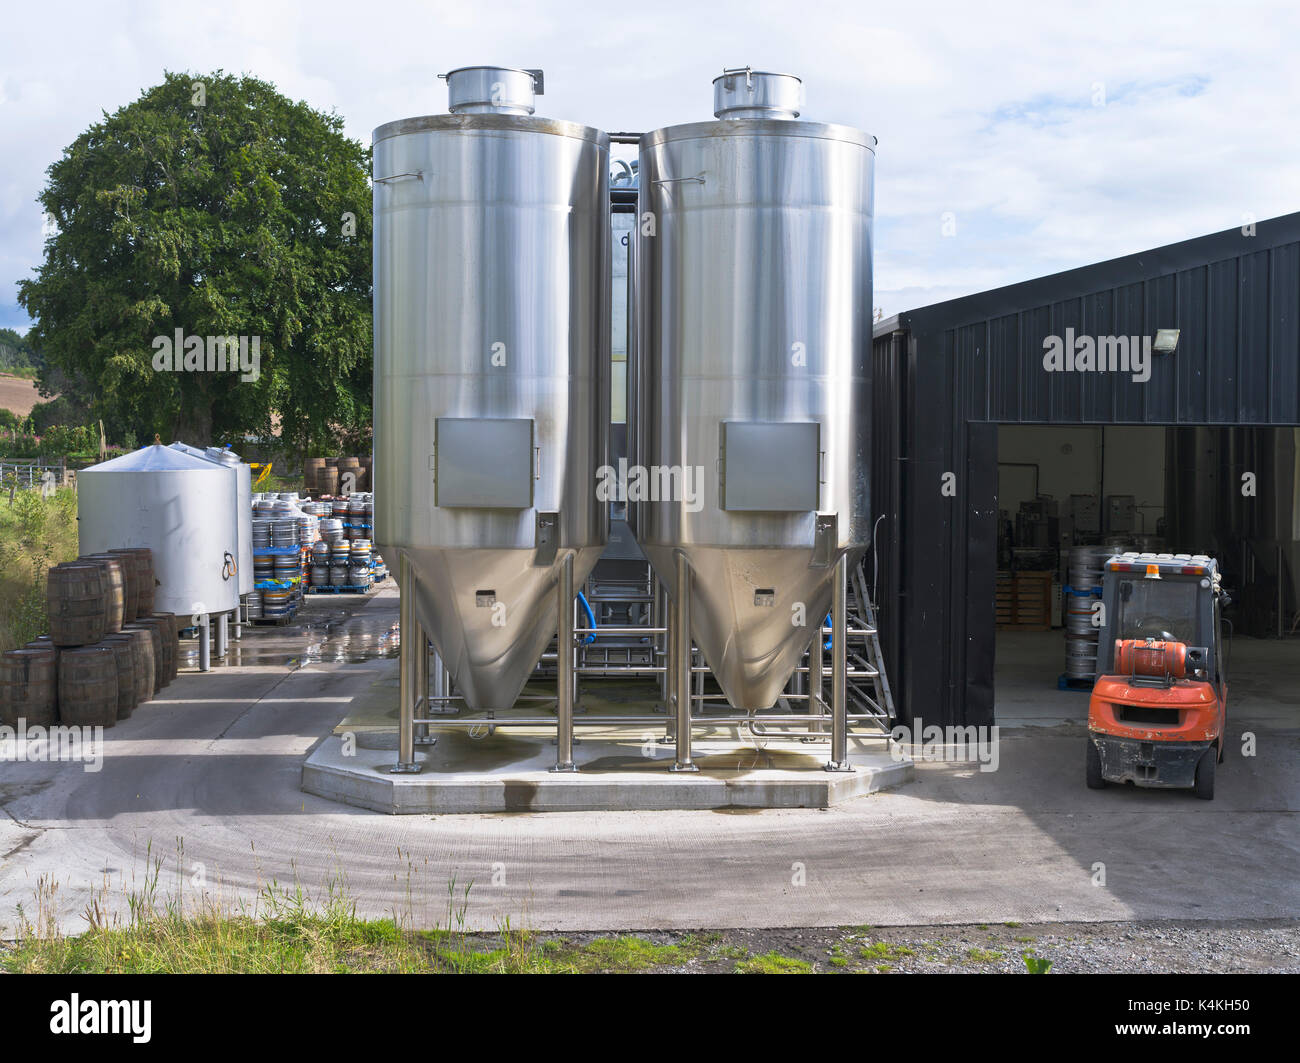 dh Black Isle Brewery MUNLOCHY ROSS CROMARTY Lagerung in Edelstahl Tanks Bierherstellung Mikrobrauerei Schottland Fermenters Gärtank Stockfoto